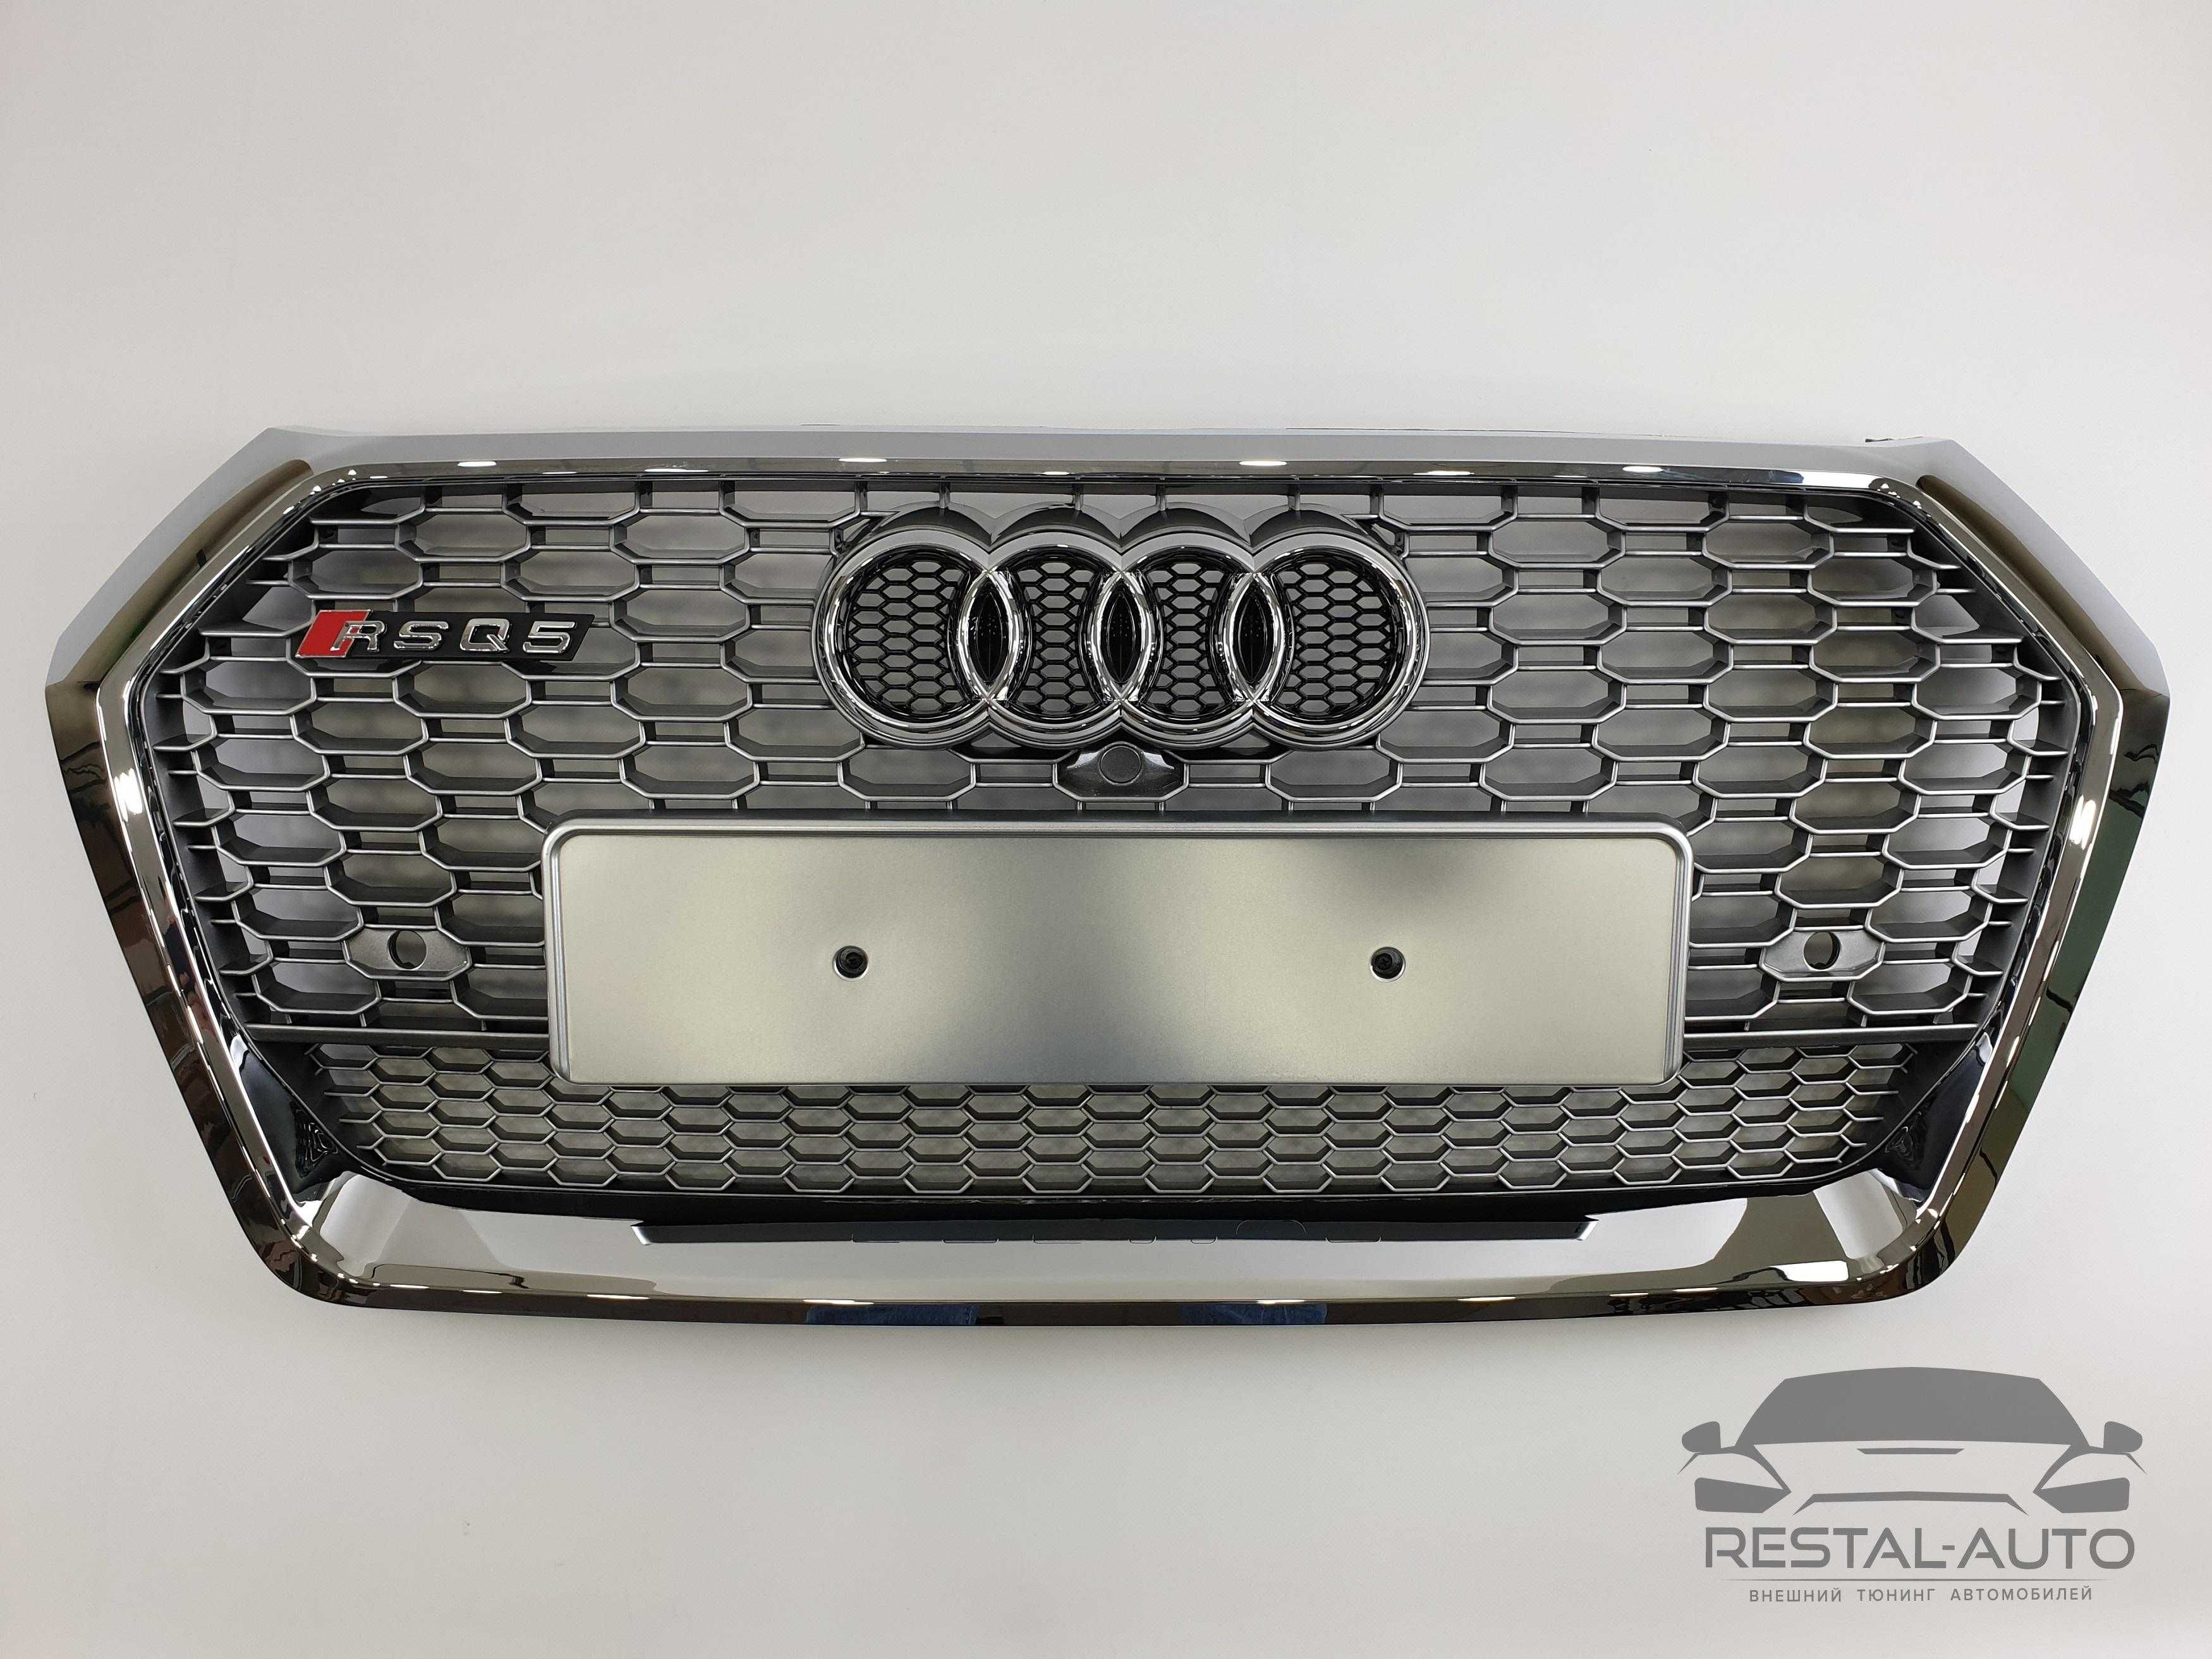 Audi RSQ5 решетка радиатора на audi Q5 2016-2020г в стиле RS